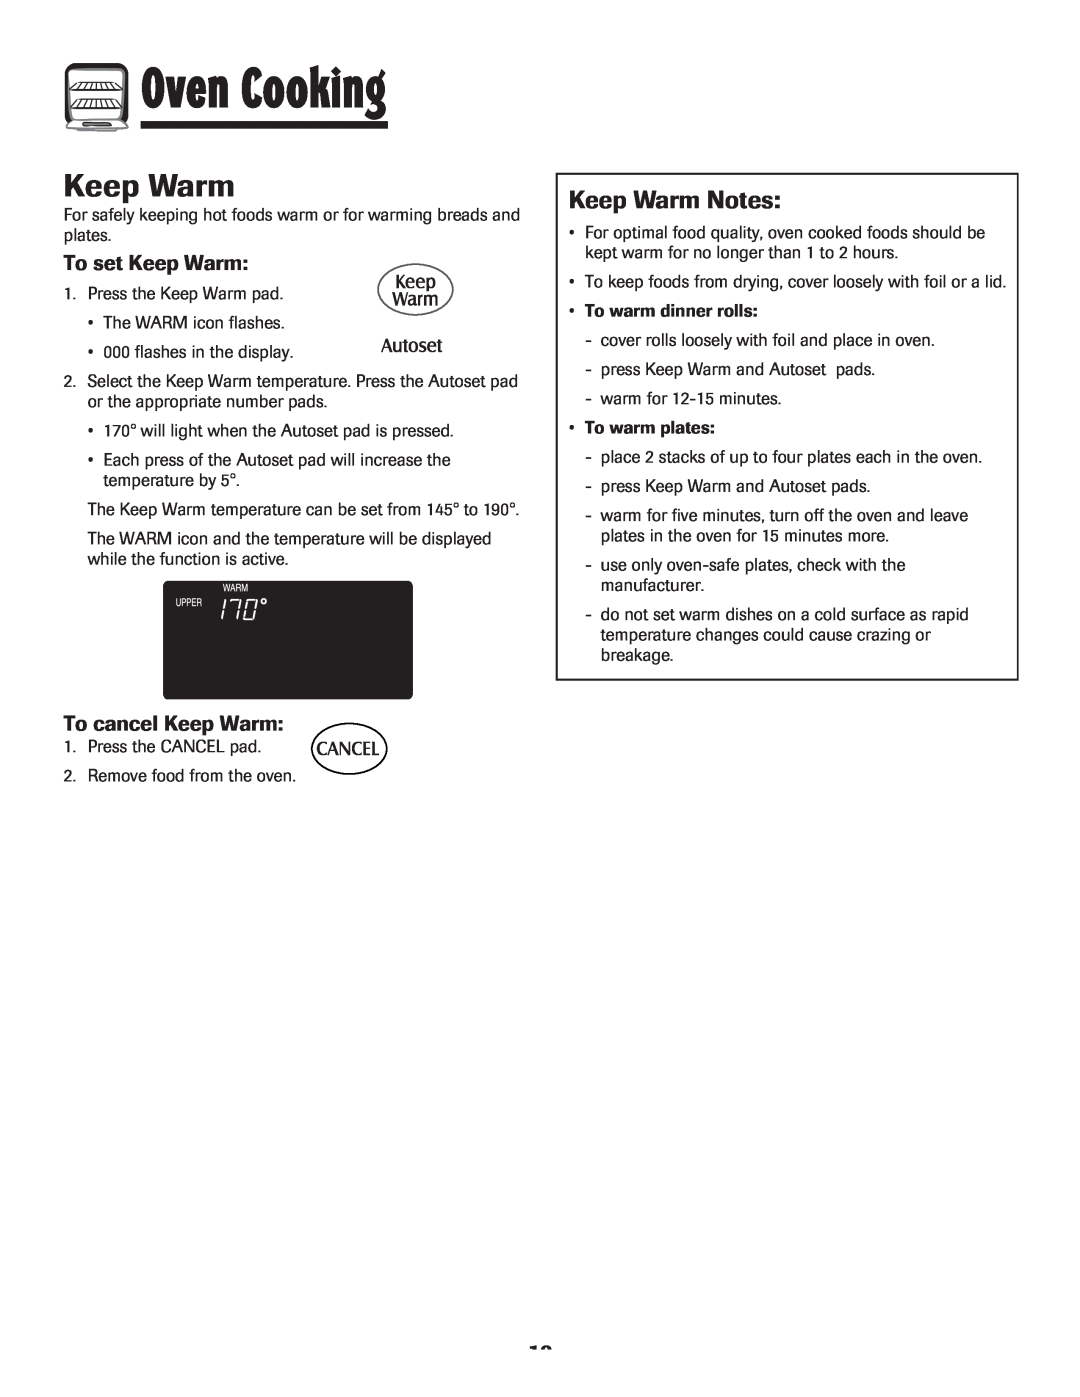 Maytag MEW6630DDW warranty Keep Warm Notes, To set Keep Warm, To cancel Keep Warm, Oven Cooking 